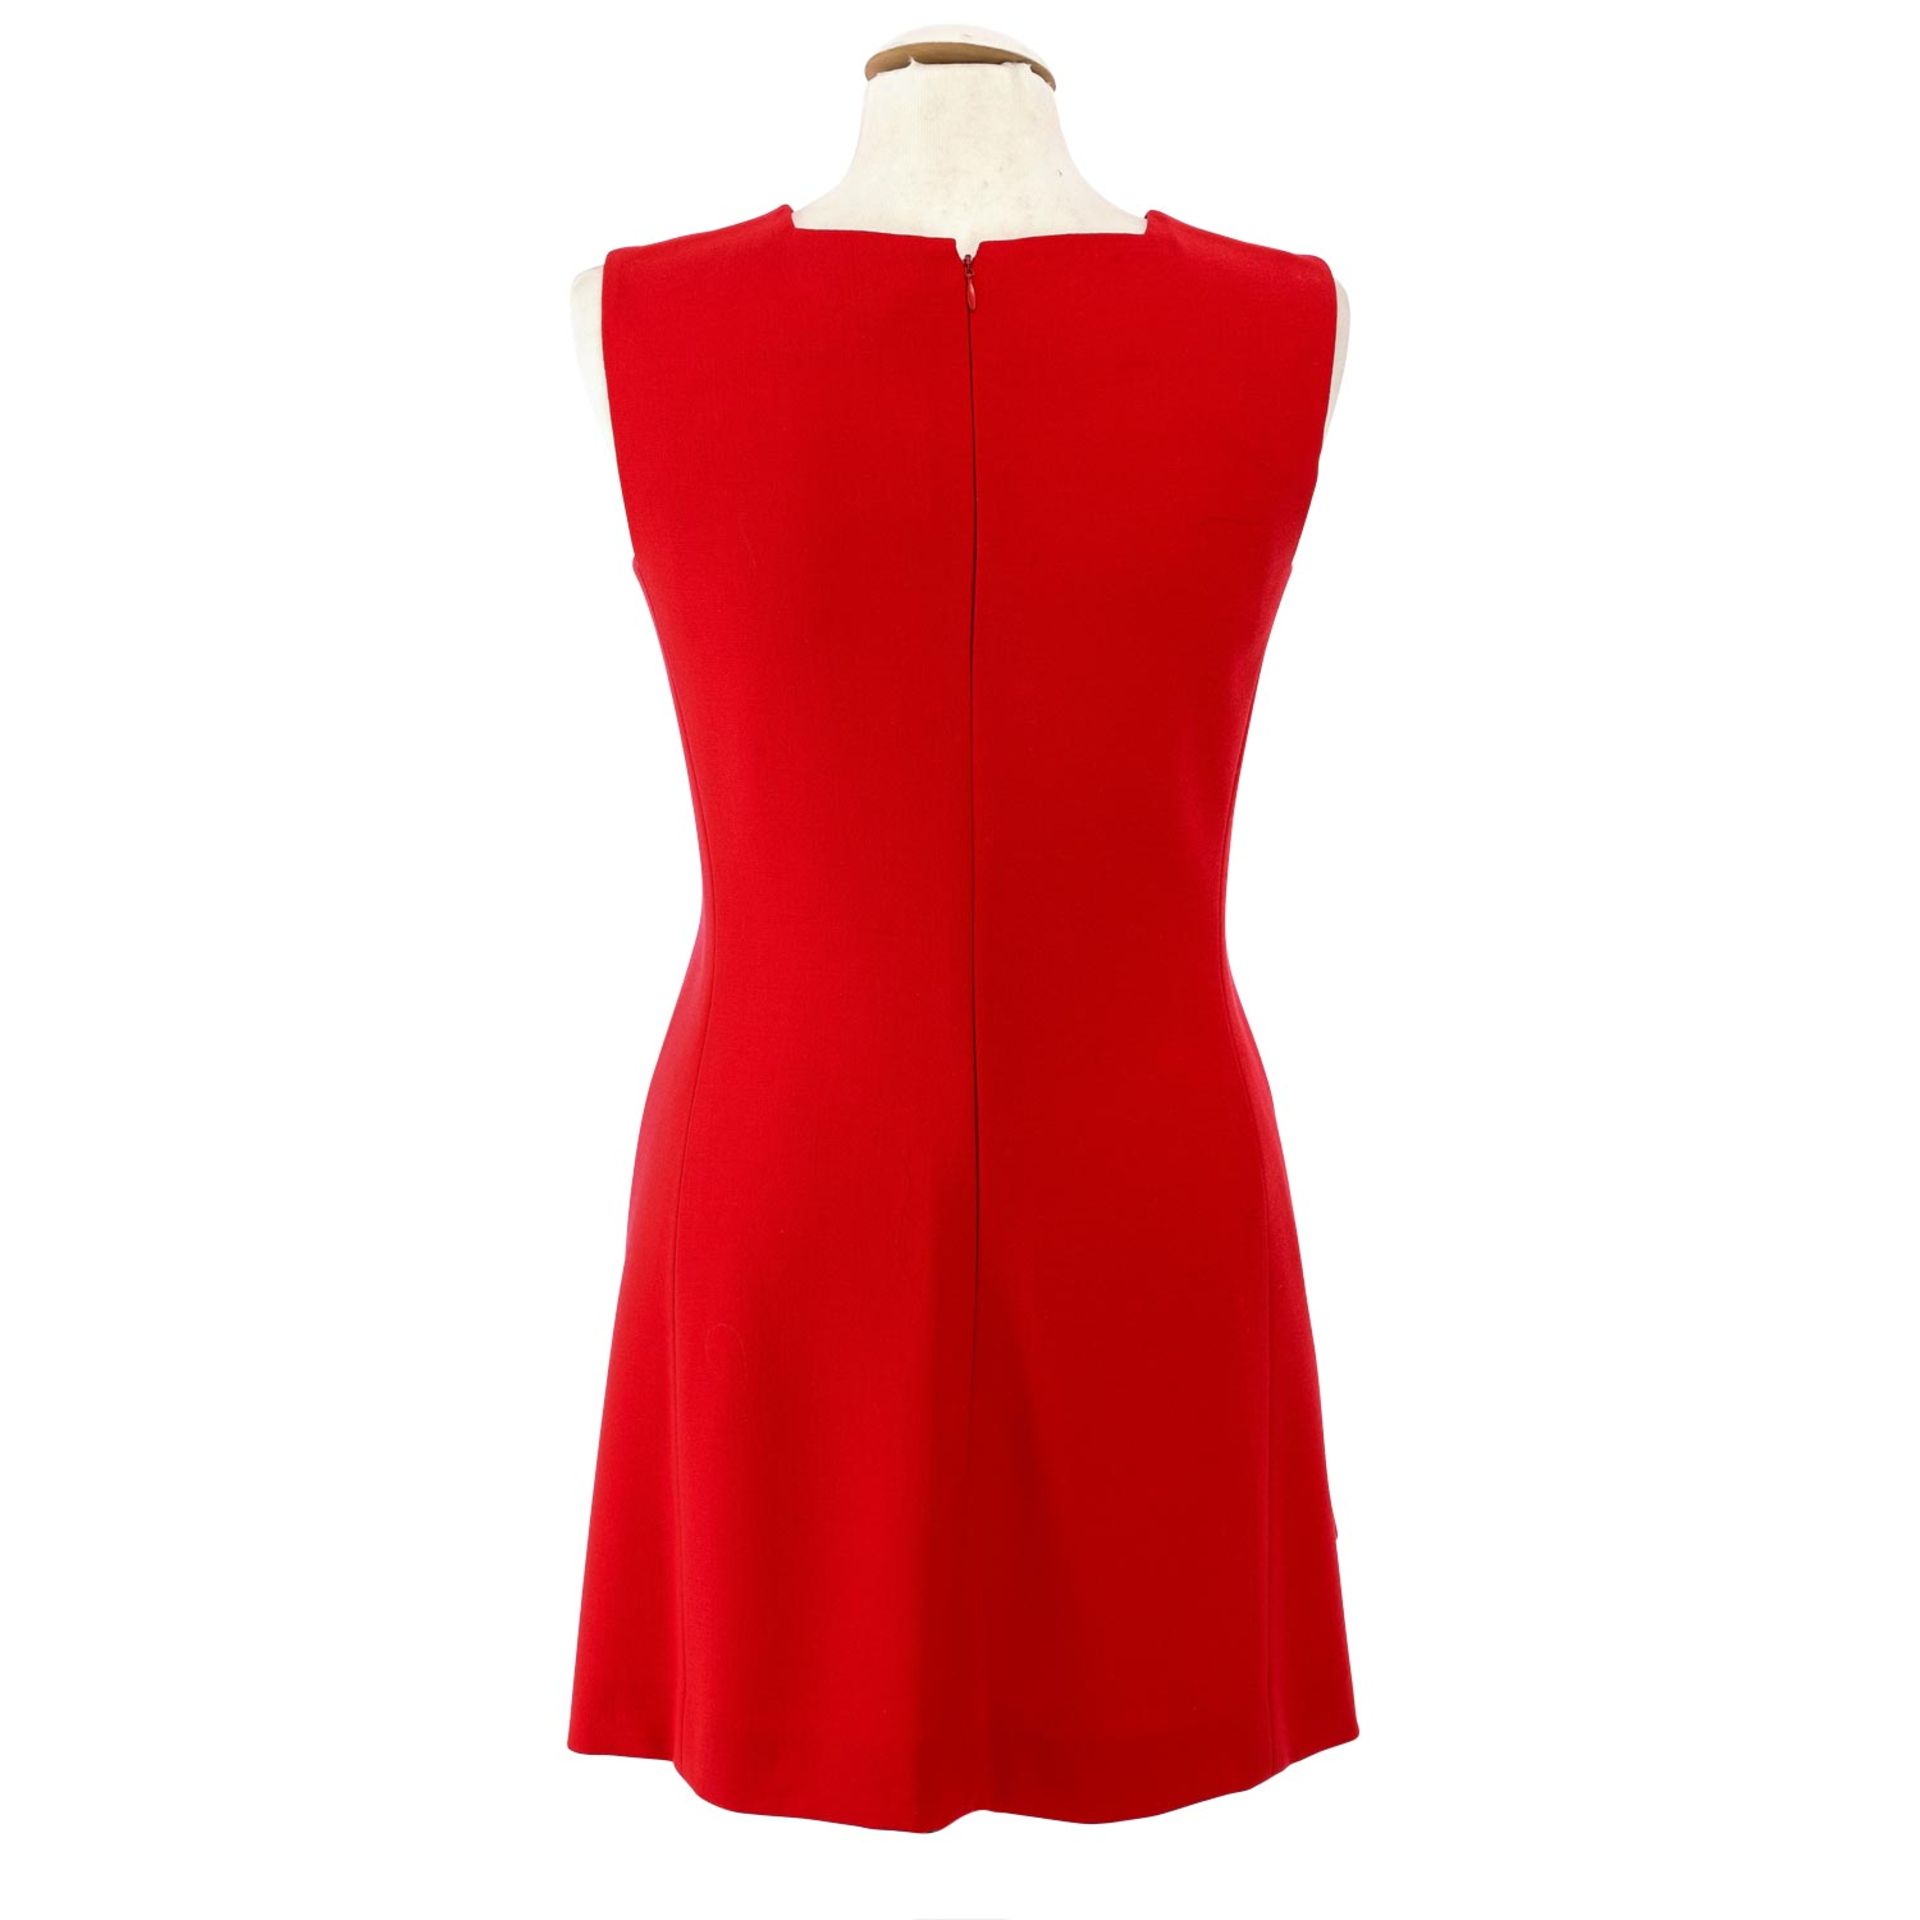 GIANNI VERSACE COUTURE VINTAGE Kleid, Gr. 38 (40 ital.).Klassisches Kleid in Rot, Etui - Bild 4 aus 4